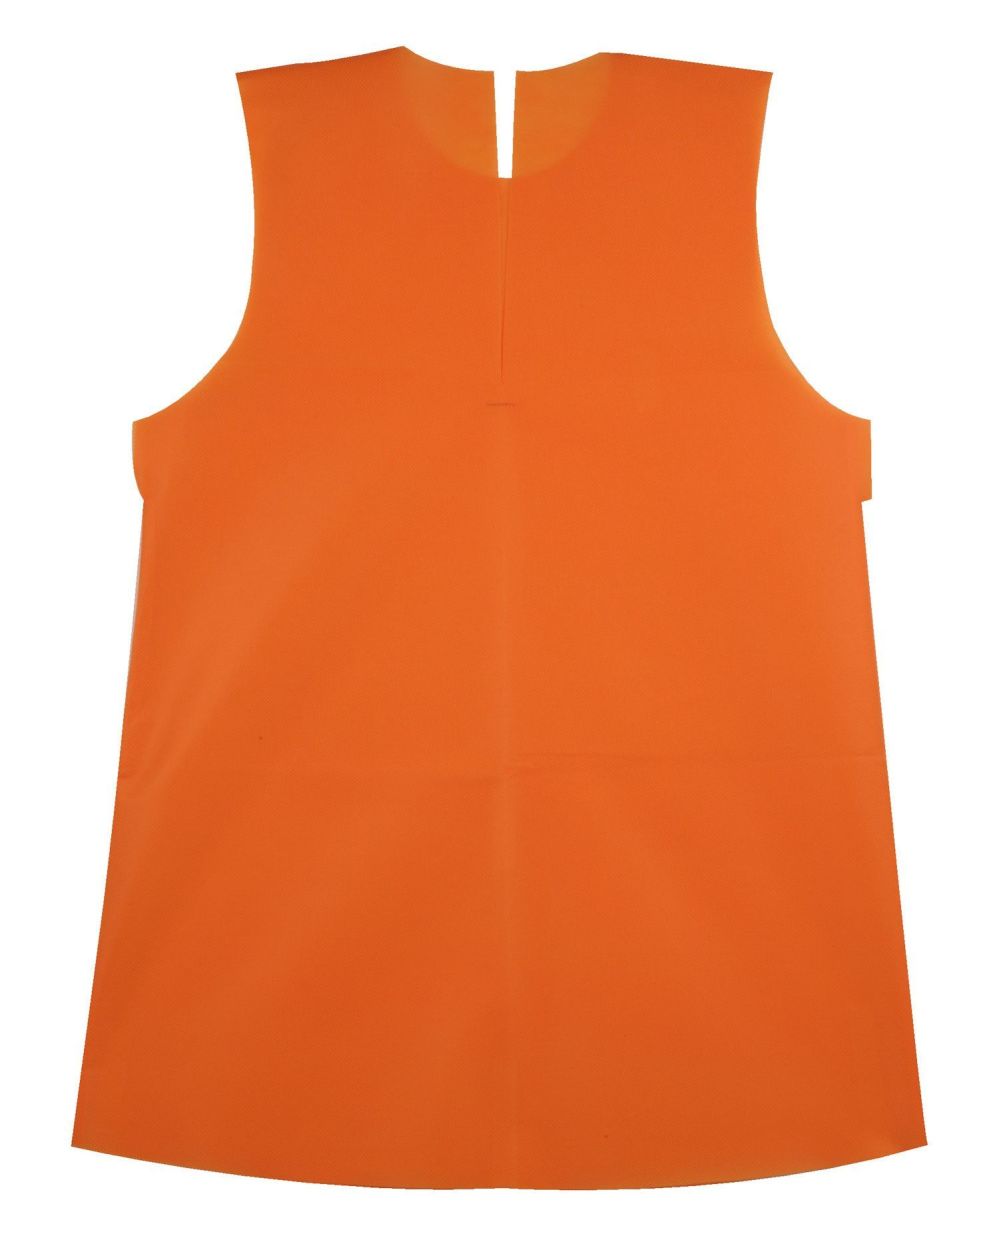 作業服JP 衣装ベース ワンピース(Cサイズ) オレンジ アーテック 2097